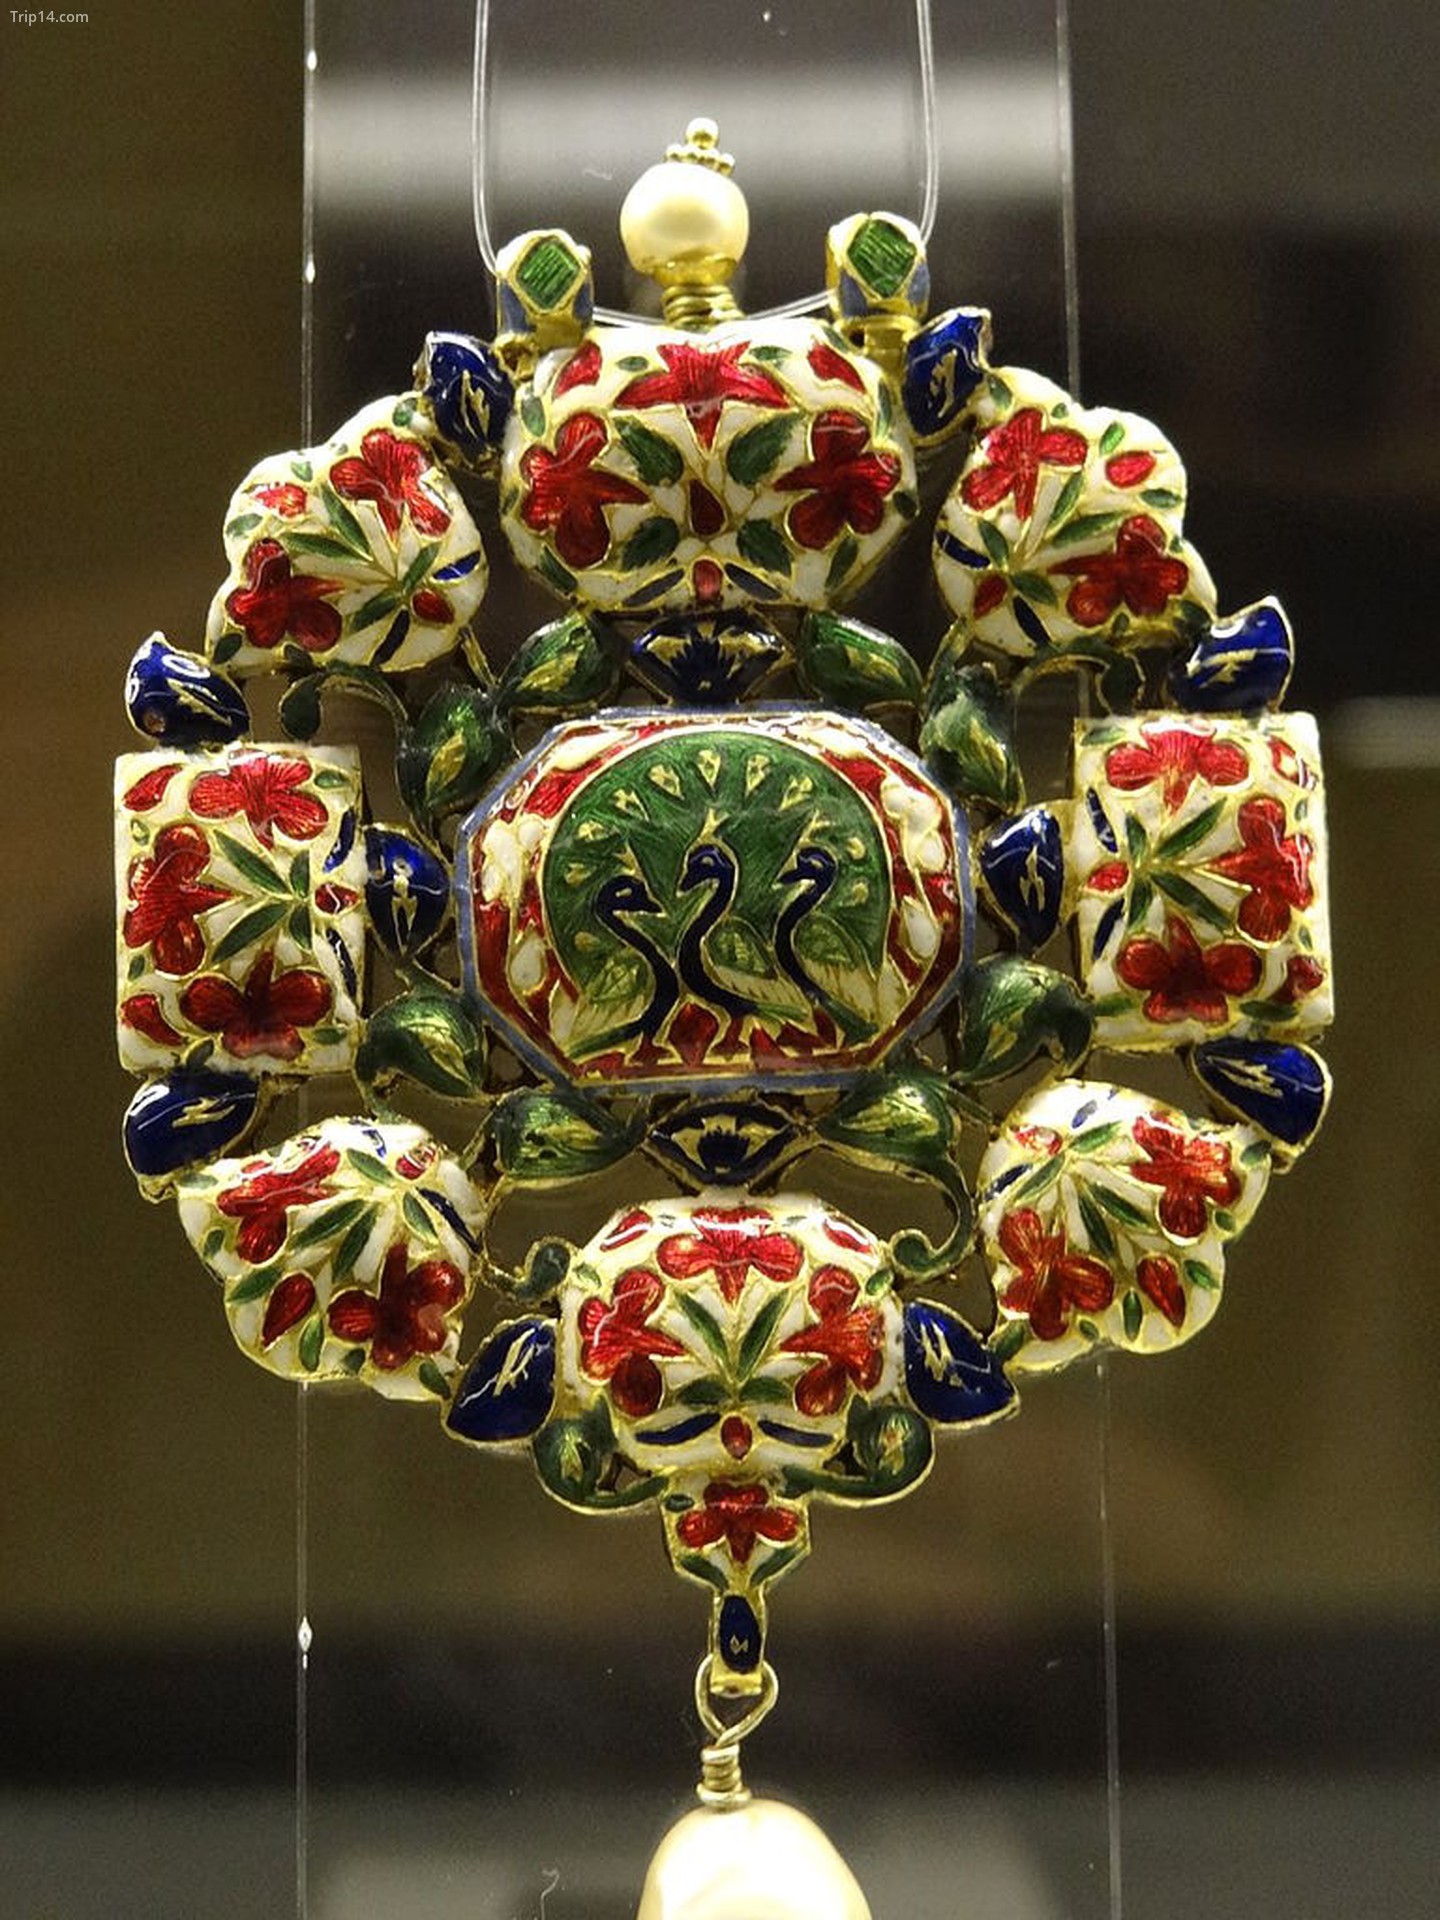  Đồ trang sức Ấn Độ được trưng bày tại Schaezlerpalais   |   